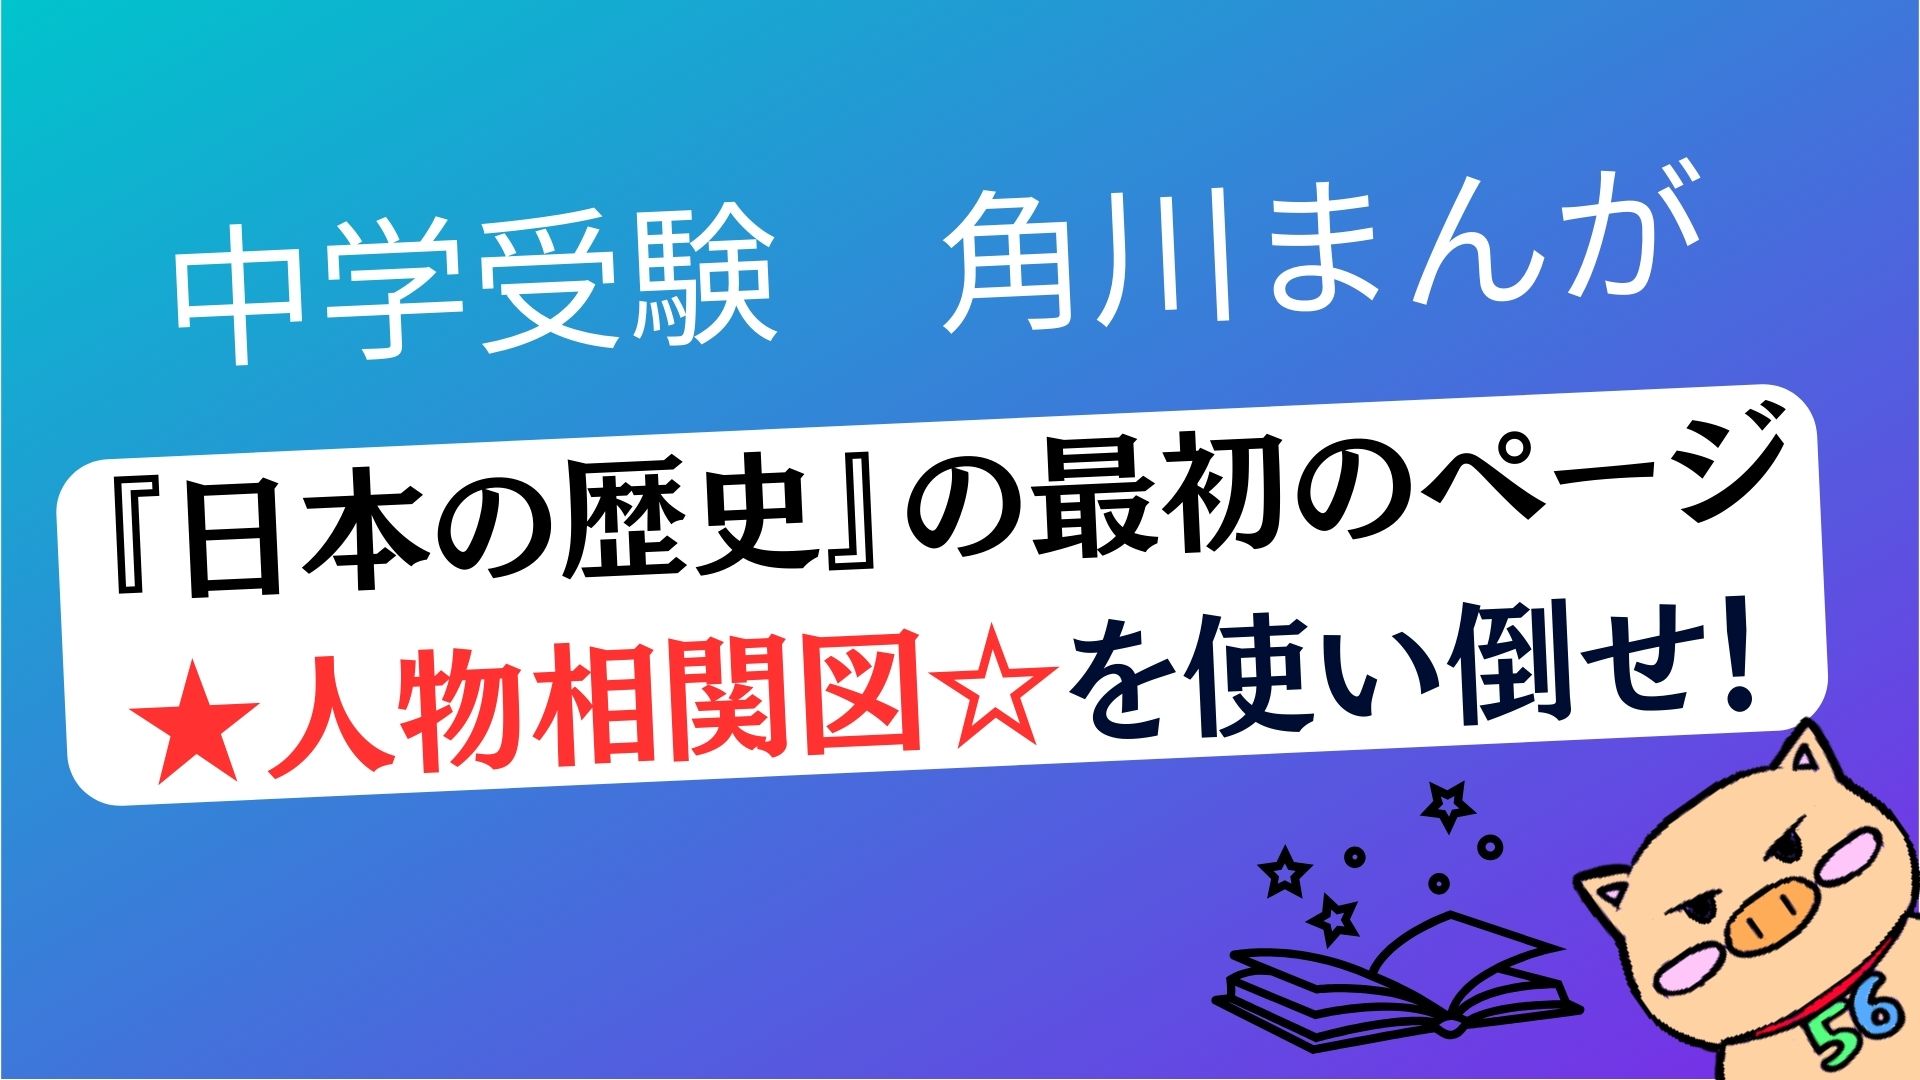 【中学受験】角川まんが『日本の歴史』を使った最強勉強法「人物 